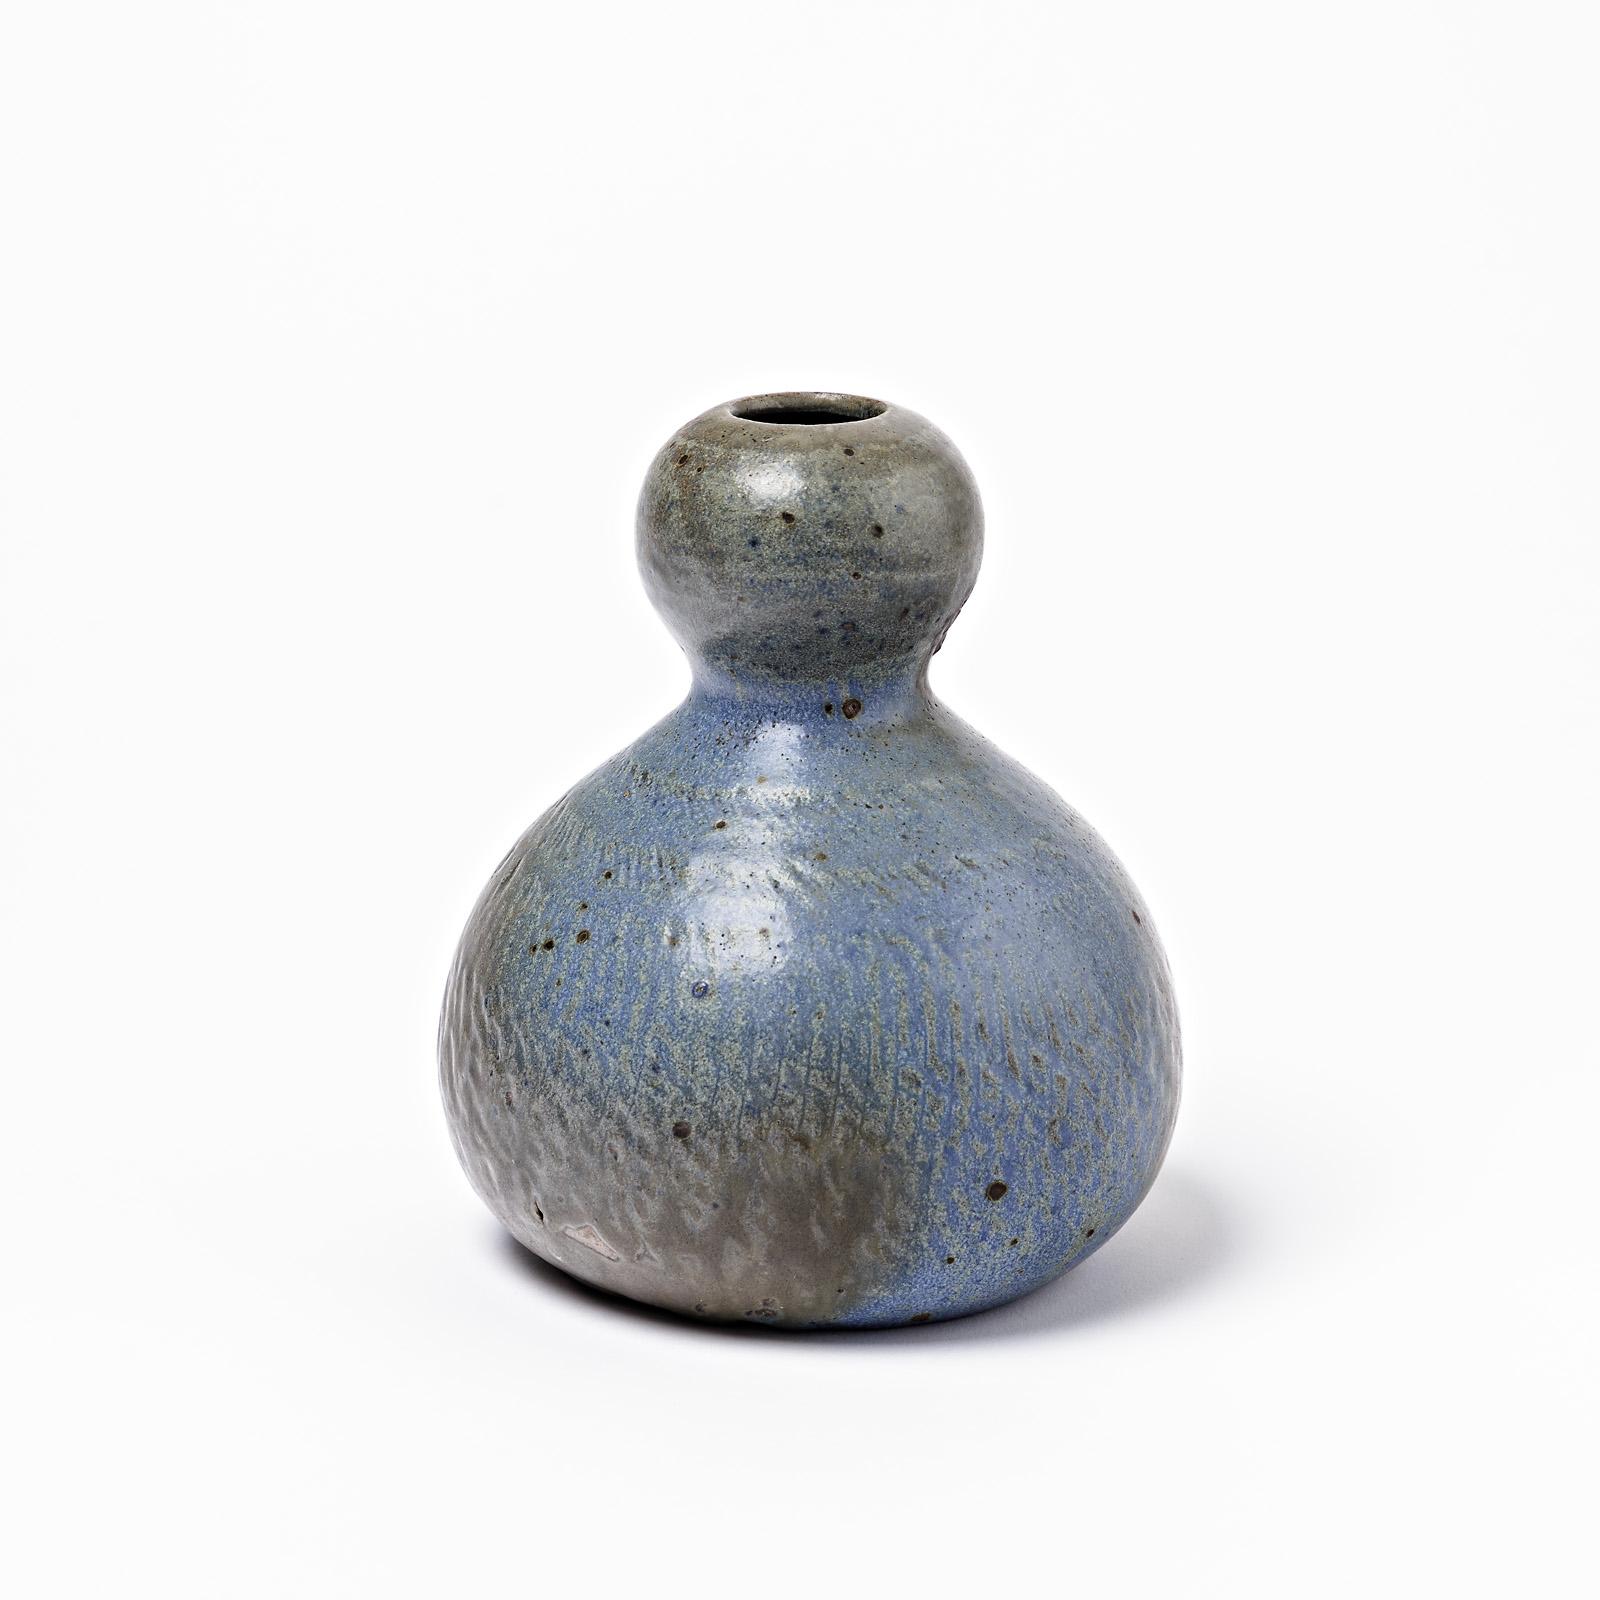 Vase aus Keramik mit blauer und brauner Glasur, ein Werk von Théo Perrot.
Perfekter Originalzustand.
Unter dem Sockel signiert 